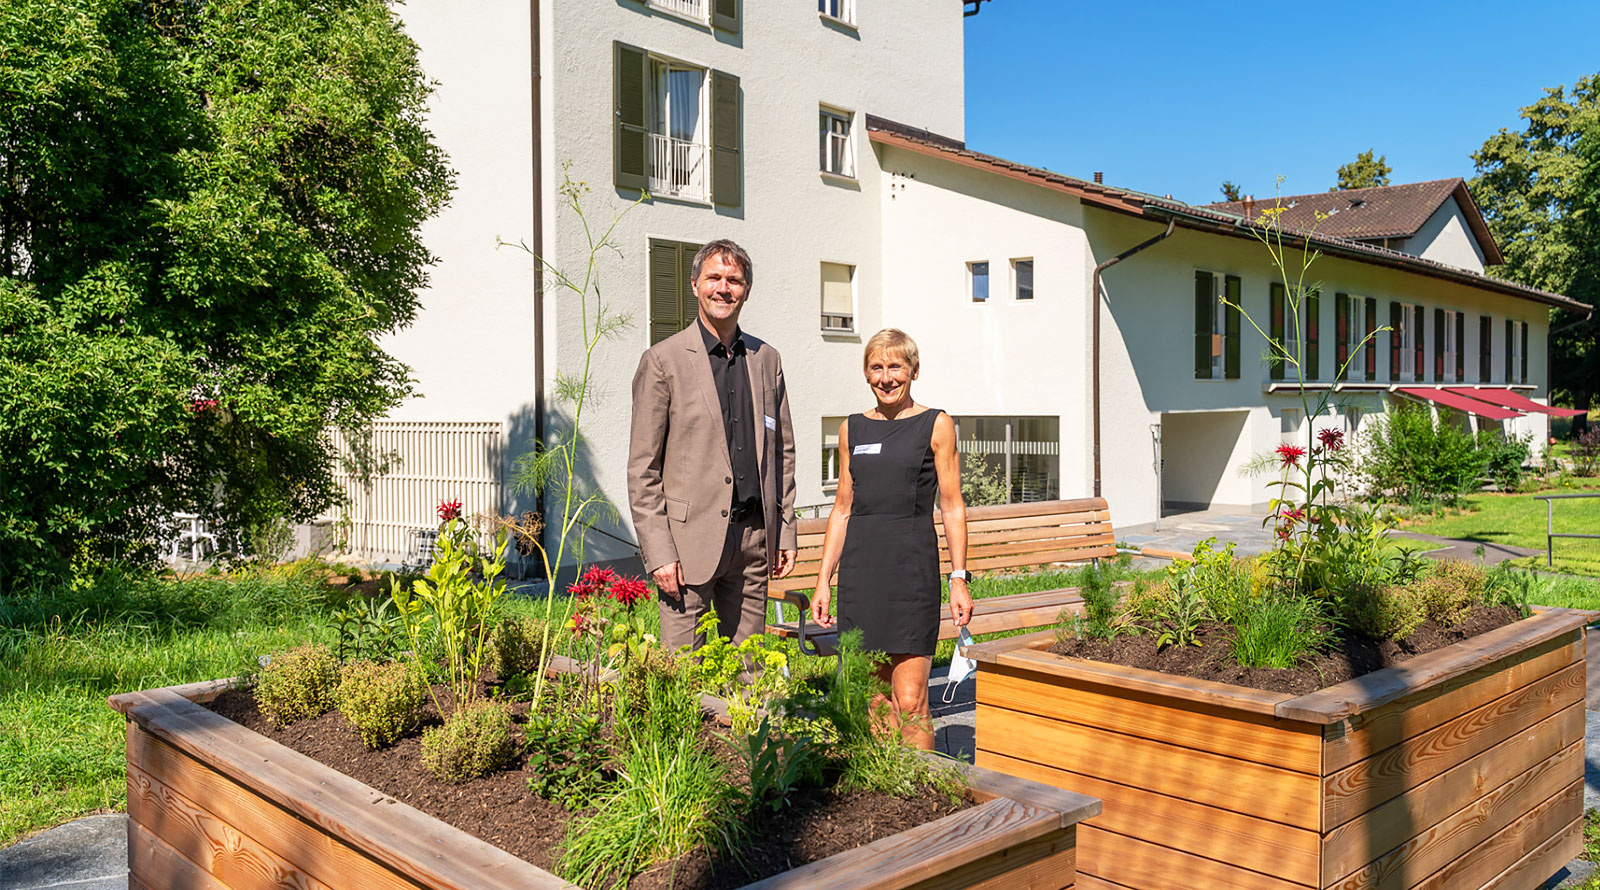 Caspar Hoesch, Bereichsleiter Bau&Entwicklung, und Andrea Martin-Fischer, Direktorin, vor den neu eingerichteten Hochbeeten in der Siedlung Espenhof Süd, die von den Mieterinnen und Mietern selbst bepflanzt werden können.